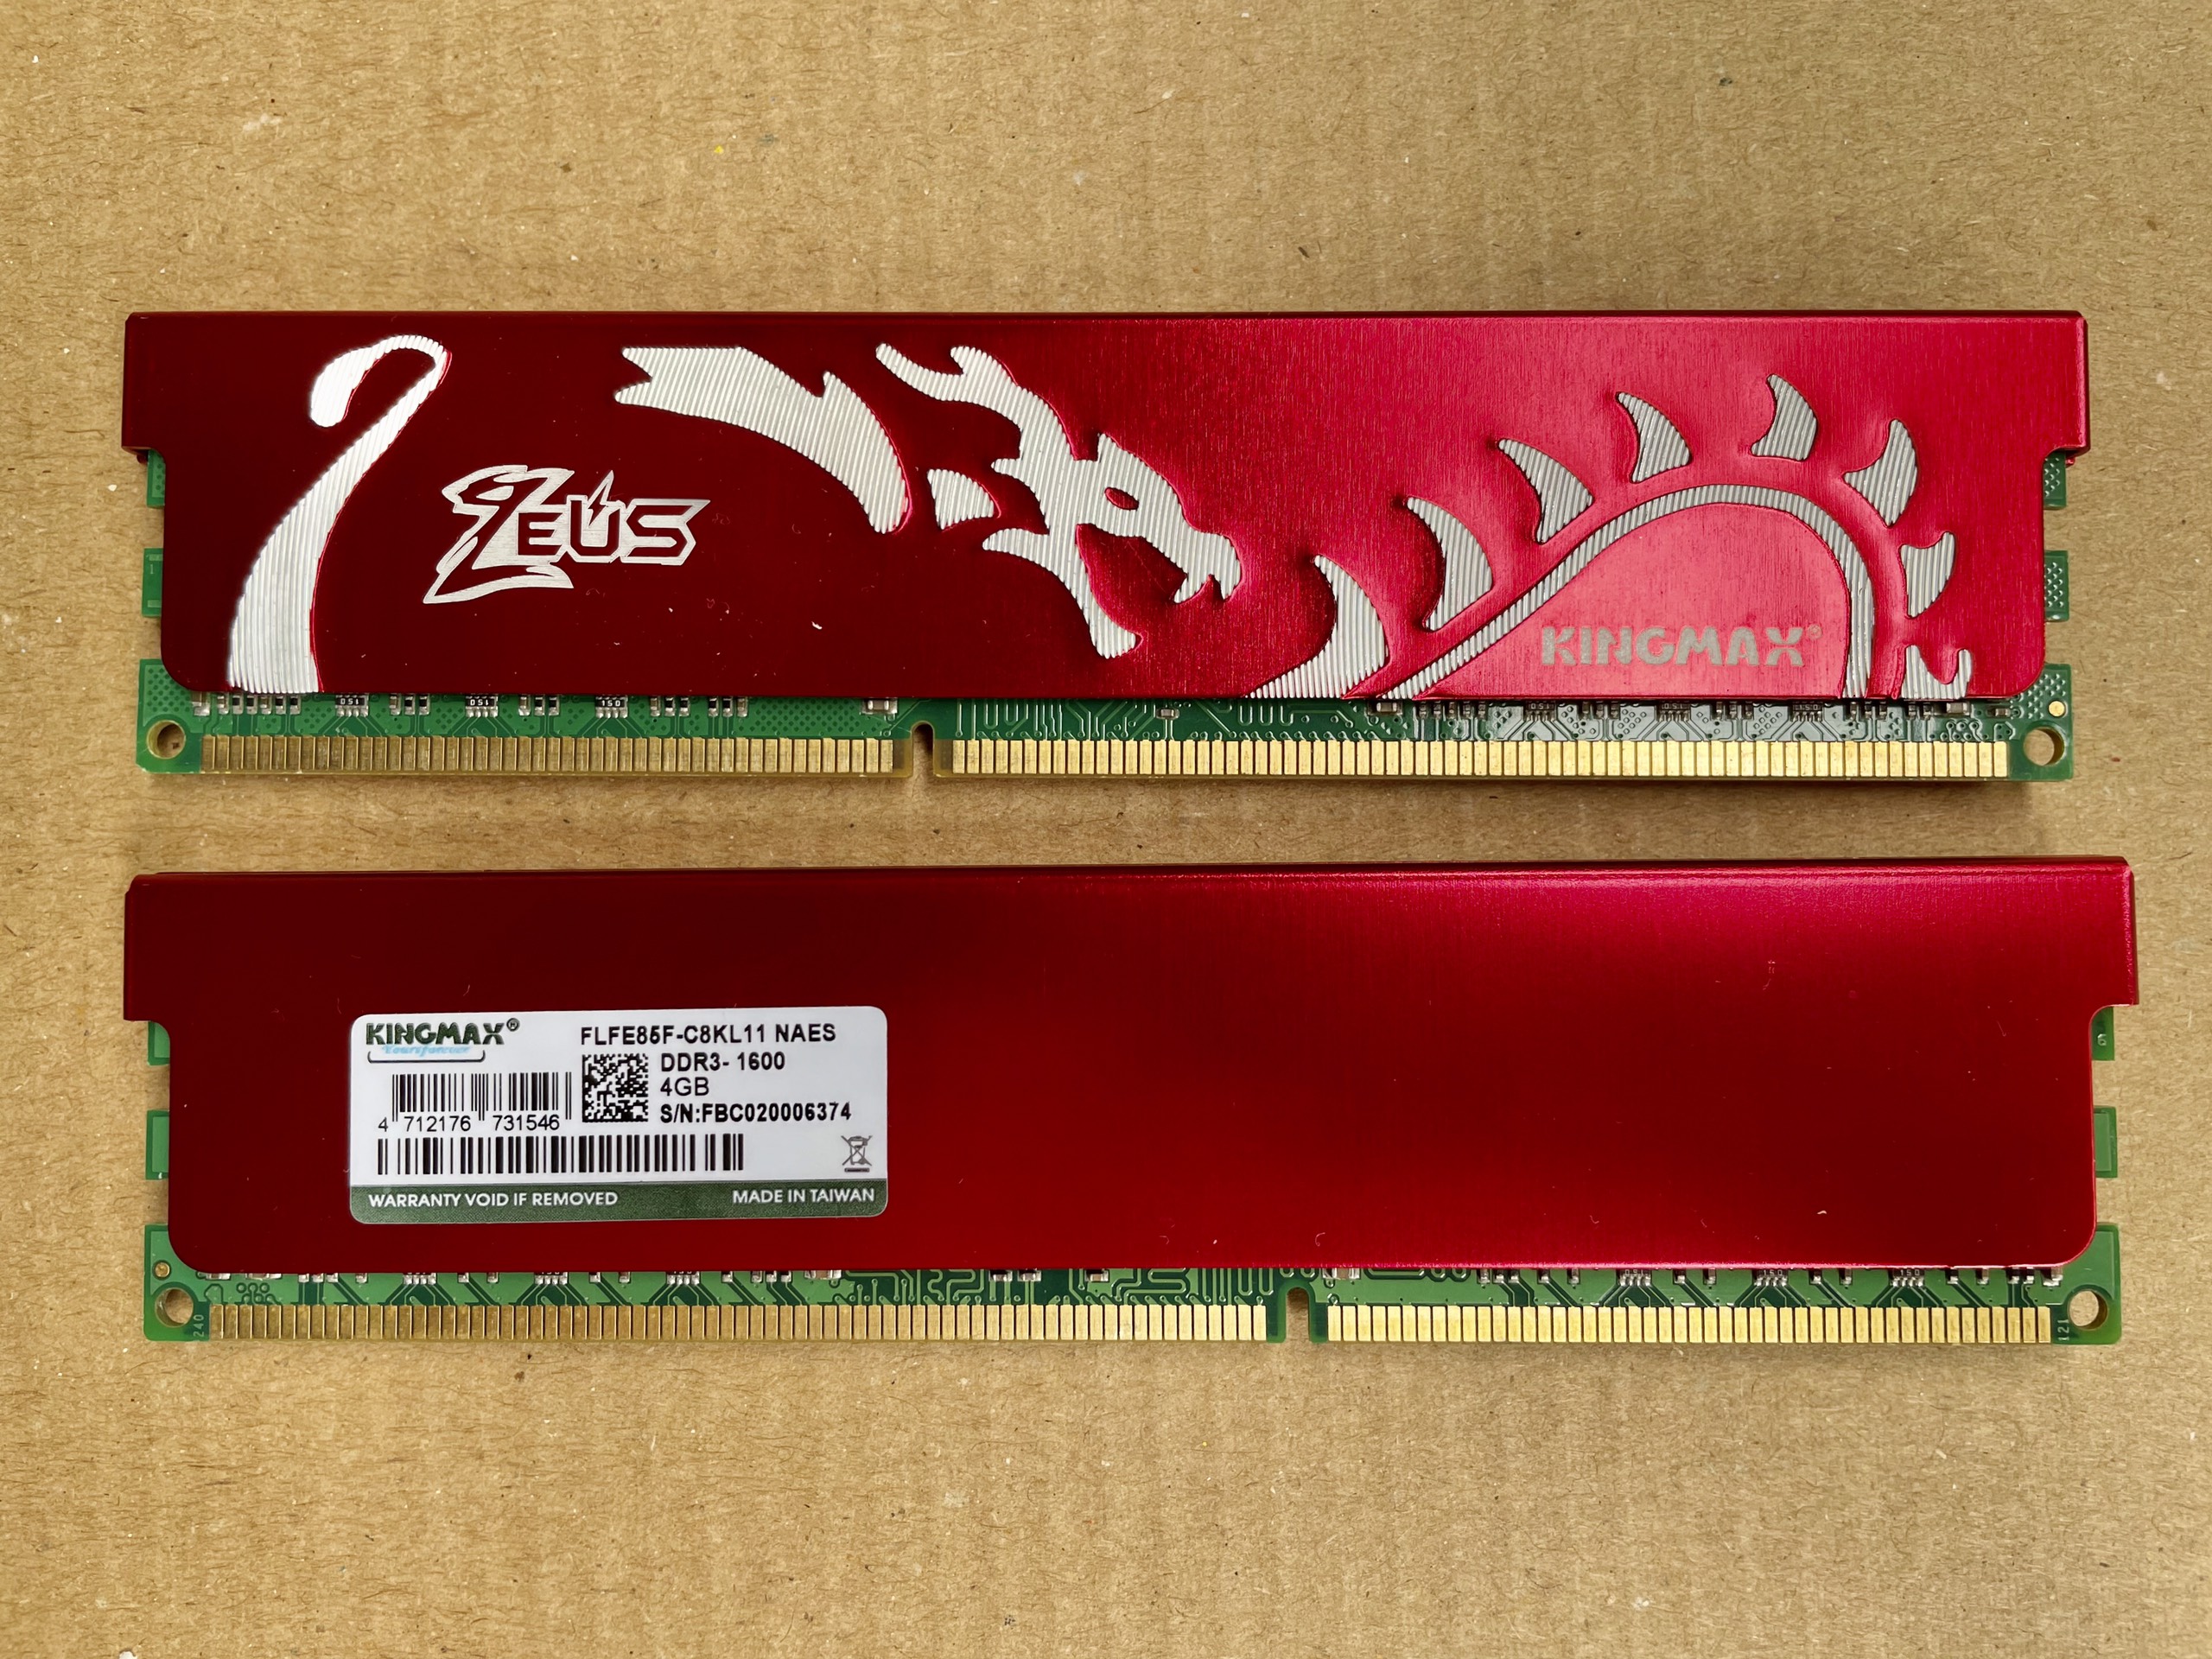 DDRAM III PC - Kingmax 4G/1600 Zeus Dragon Tản nhiệt thép 